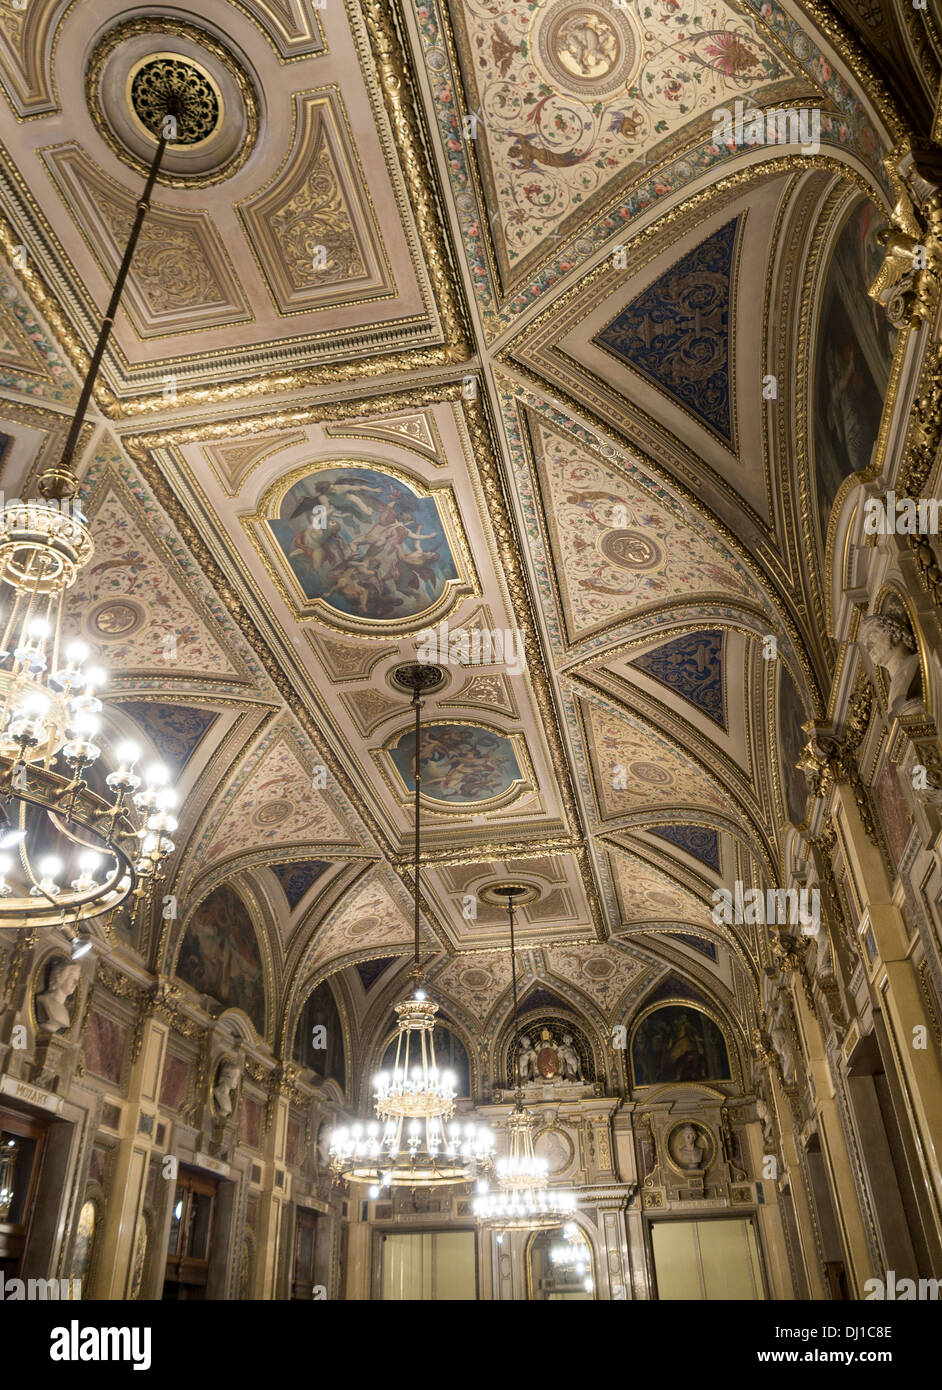 Plafond dans l'une des salles à côté de l'Opéra d'État de Vienne. L'opulente décoration d'un plafond dans le célèbre Opéra de Vienne chambre. Banque D'Images